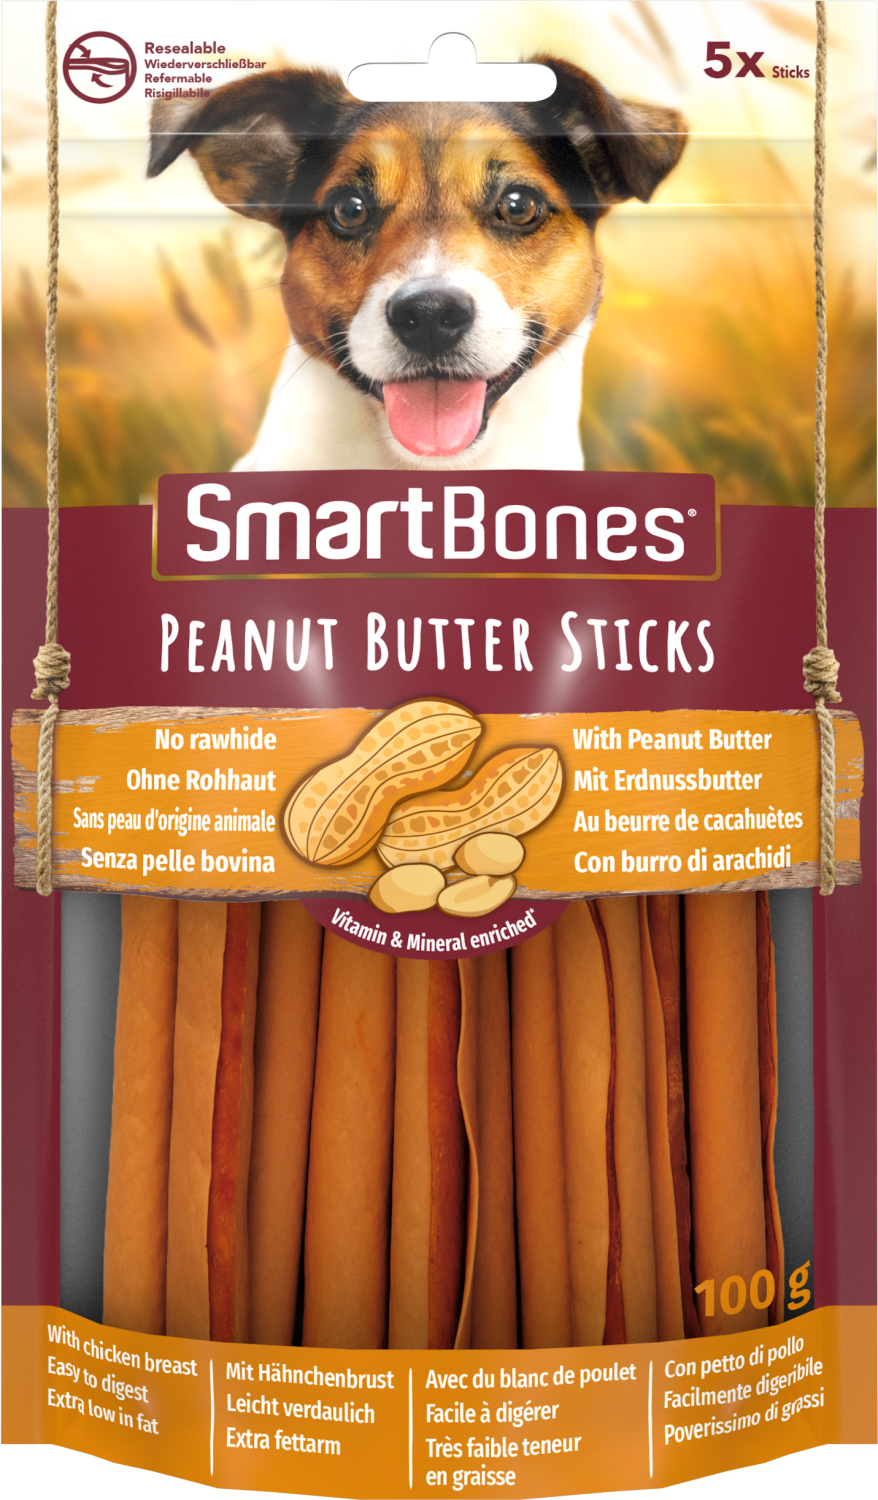 SmartBones Peanut Butter Sticks 5 Pk